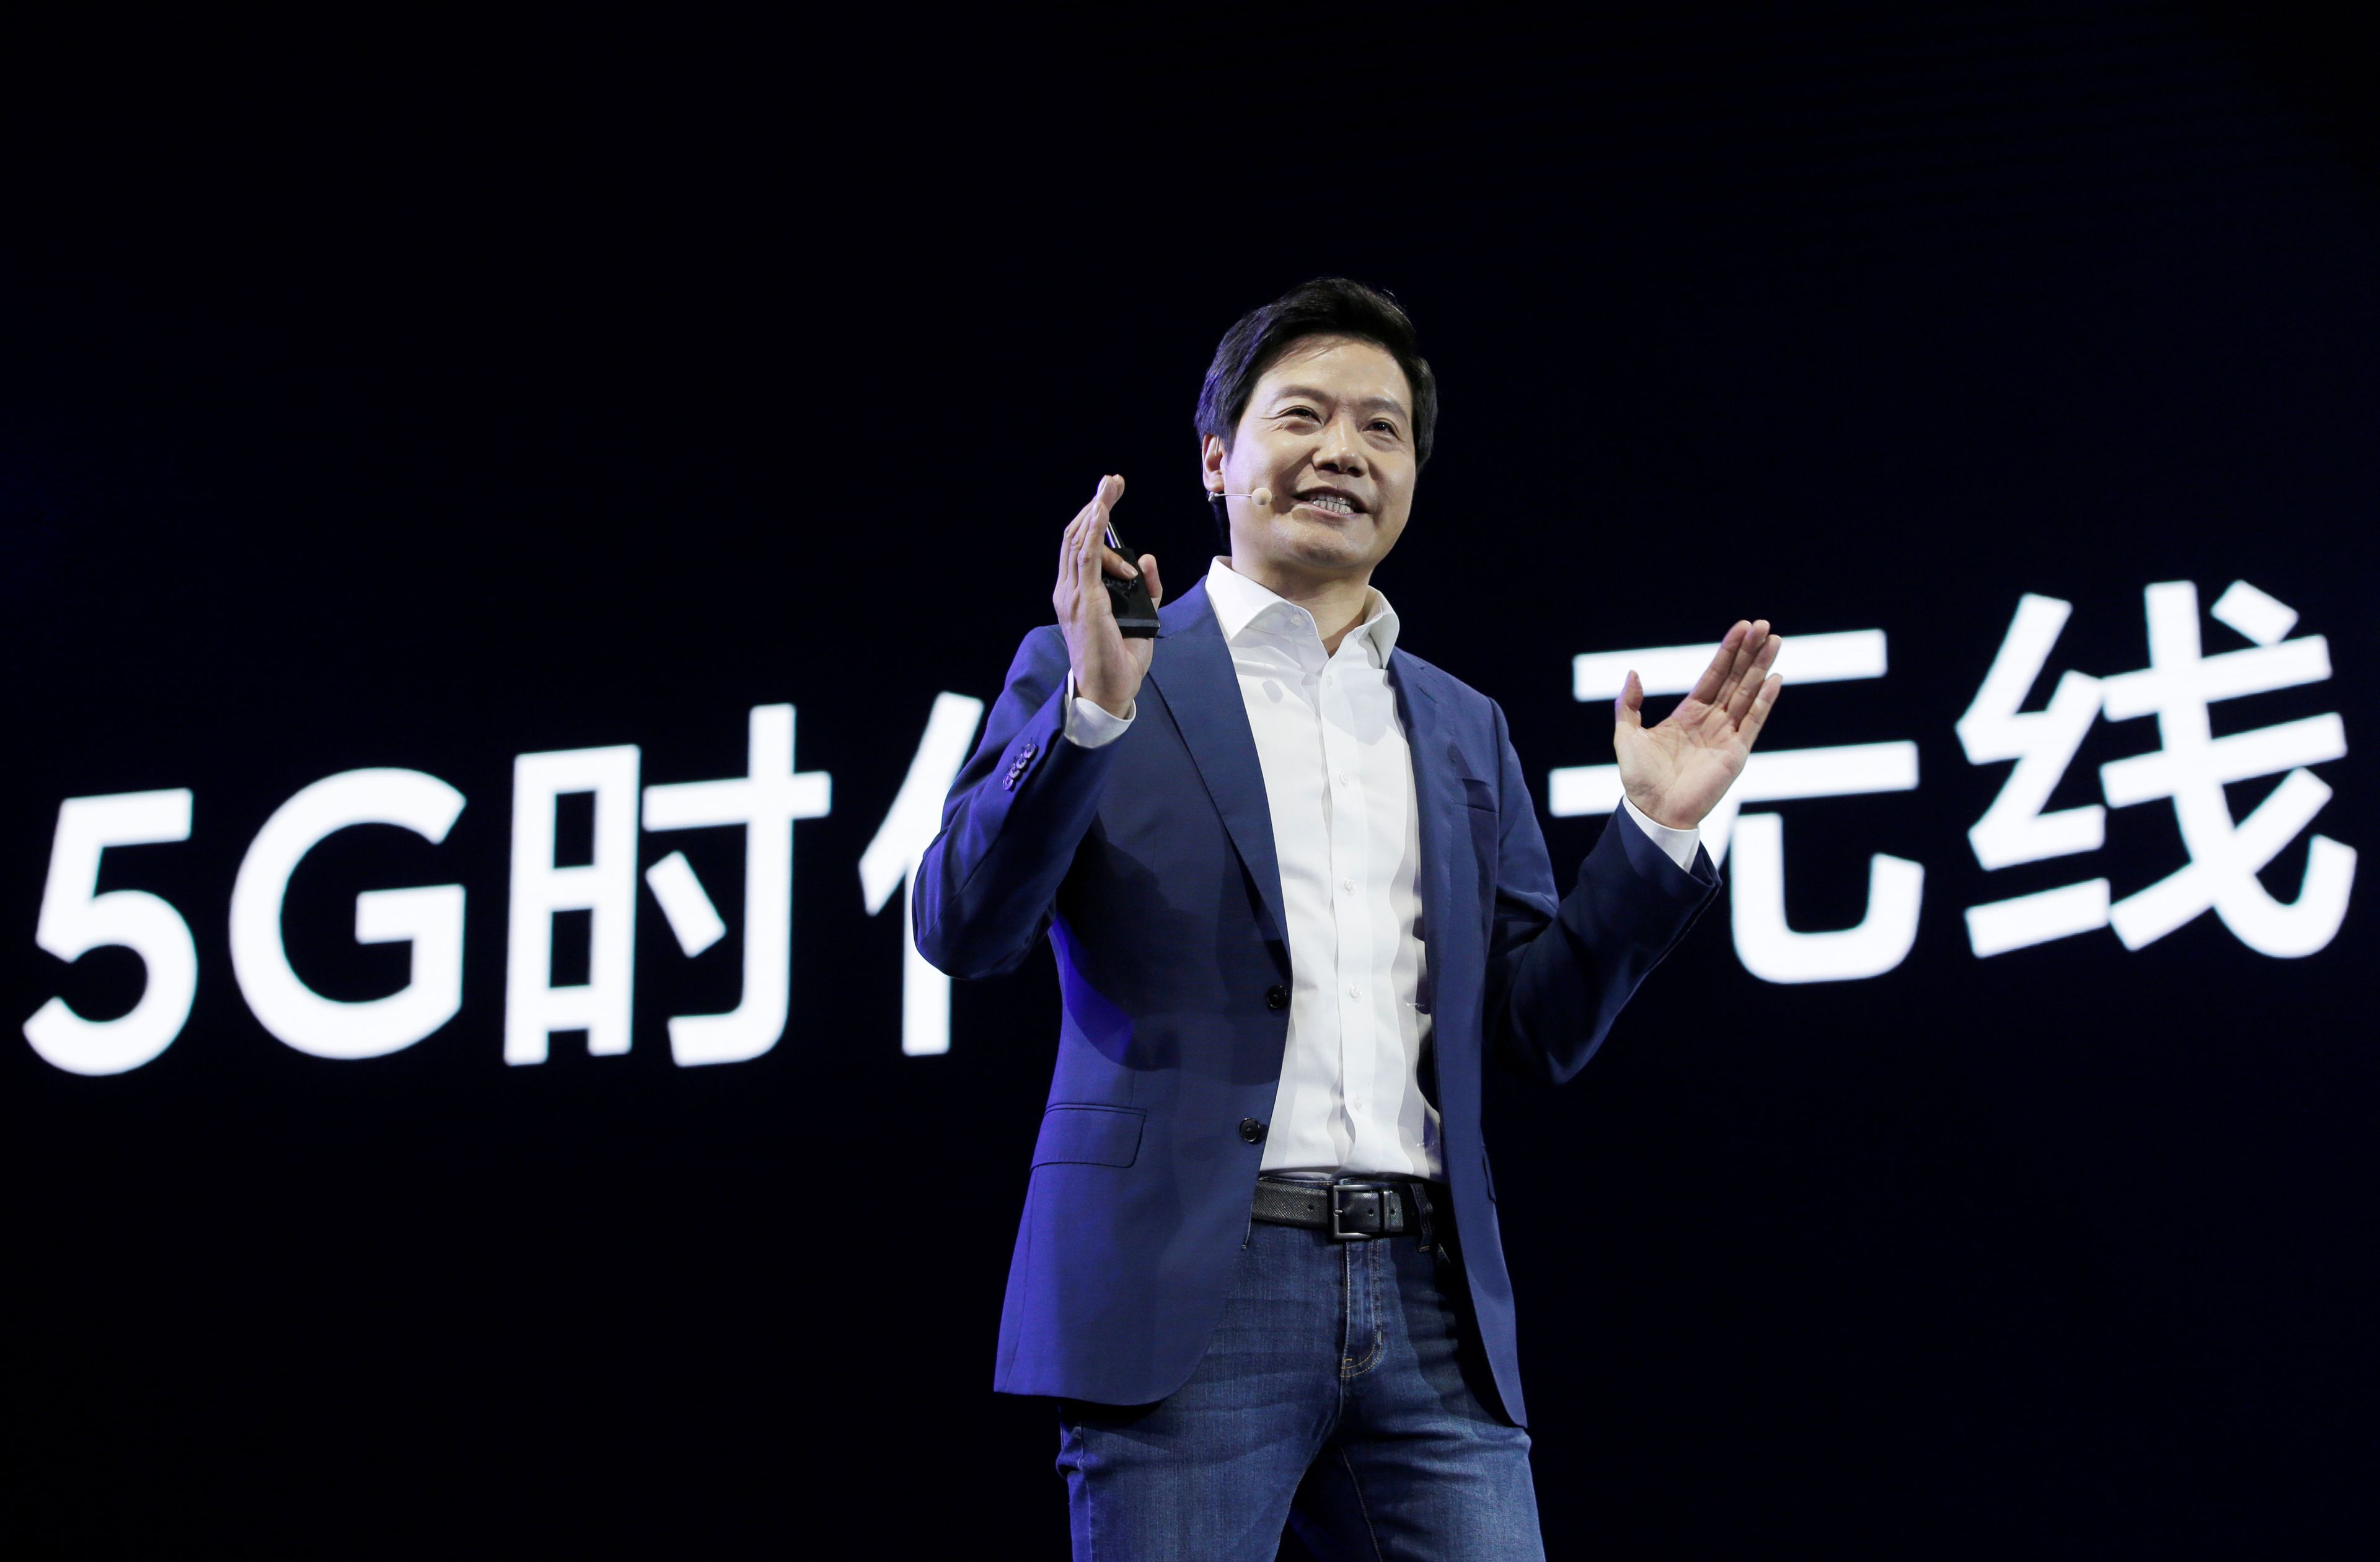 El fundador de Xiaomi, Lei Jun, durante un acto en Pekín en 2019